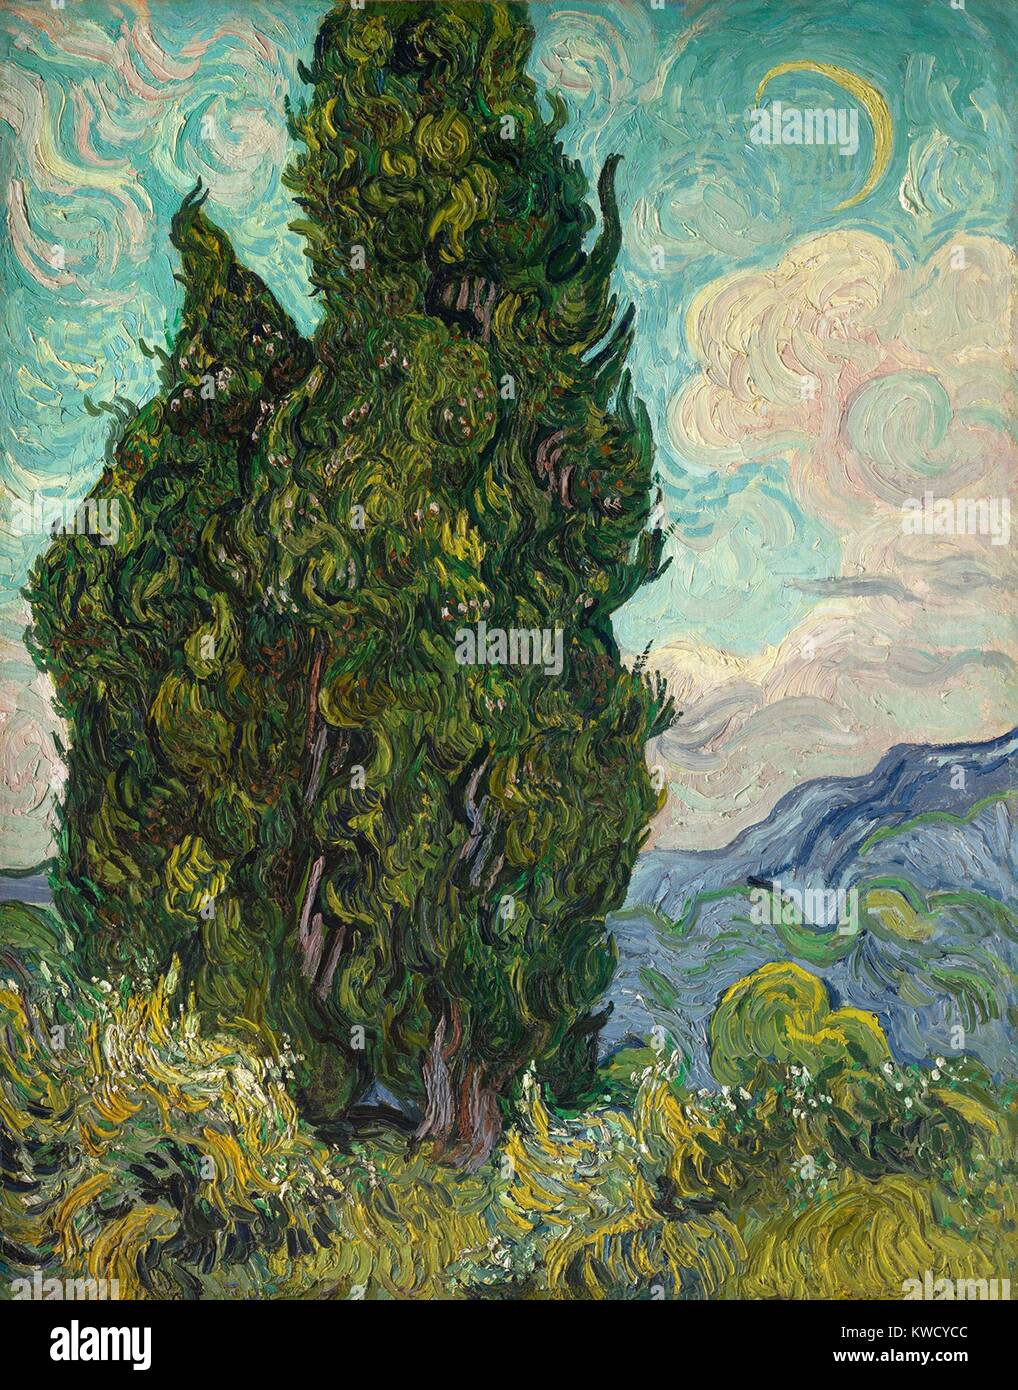 Zypressen, von Vincent Van Gogh, 1889, Dutch Post-Impressionist, Öl auf Leinwand. Van Gogh beschrieb die Zypressen als dunkle Flecken in einem Sonnenüberfluteten Landschaft. Es wurde in den Salon des Unabhängigen in Paris im Jahr 1890 gezeigt. (BSLOC 2017 5 54) Stockfoto